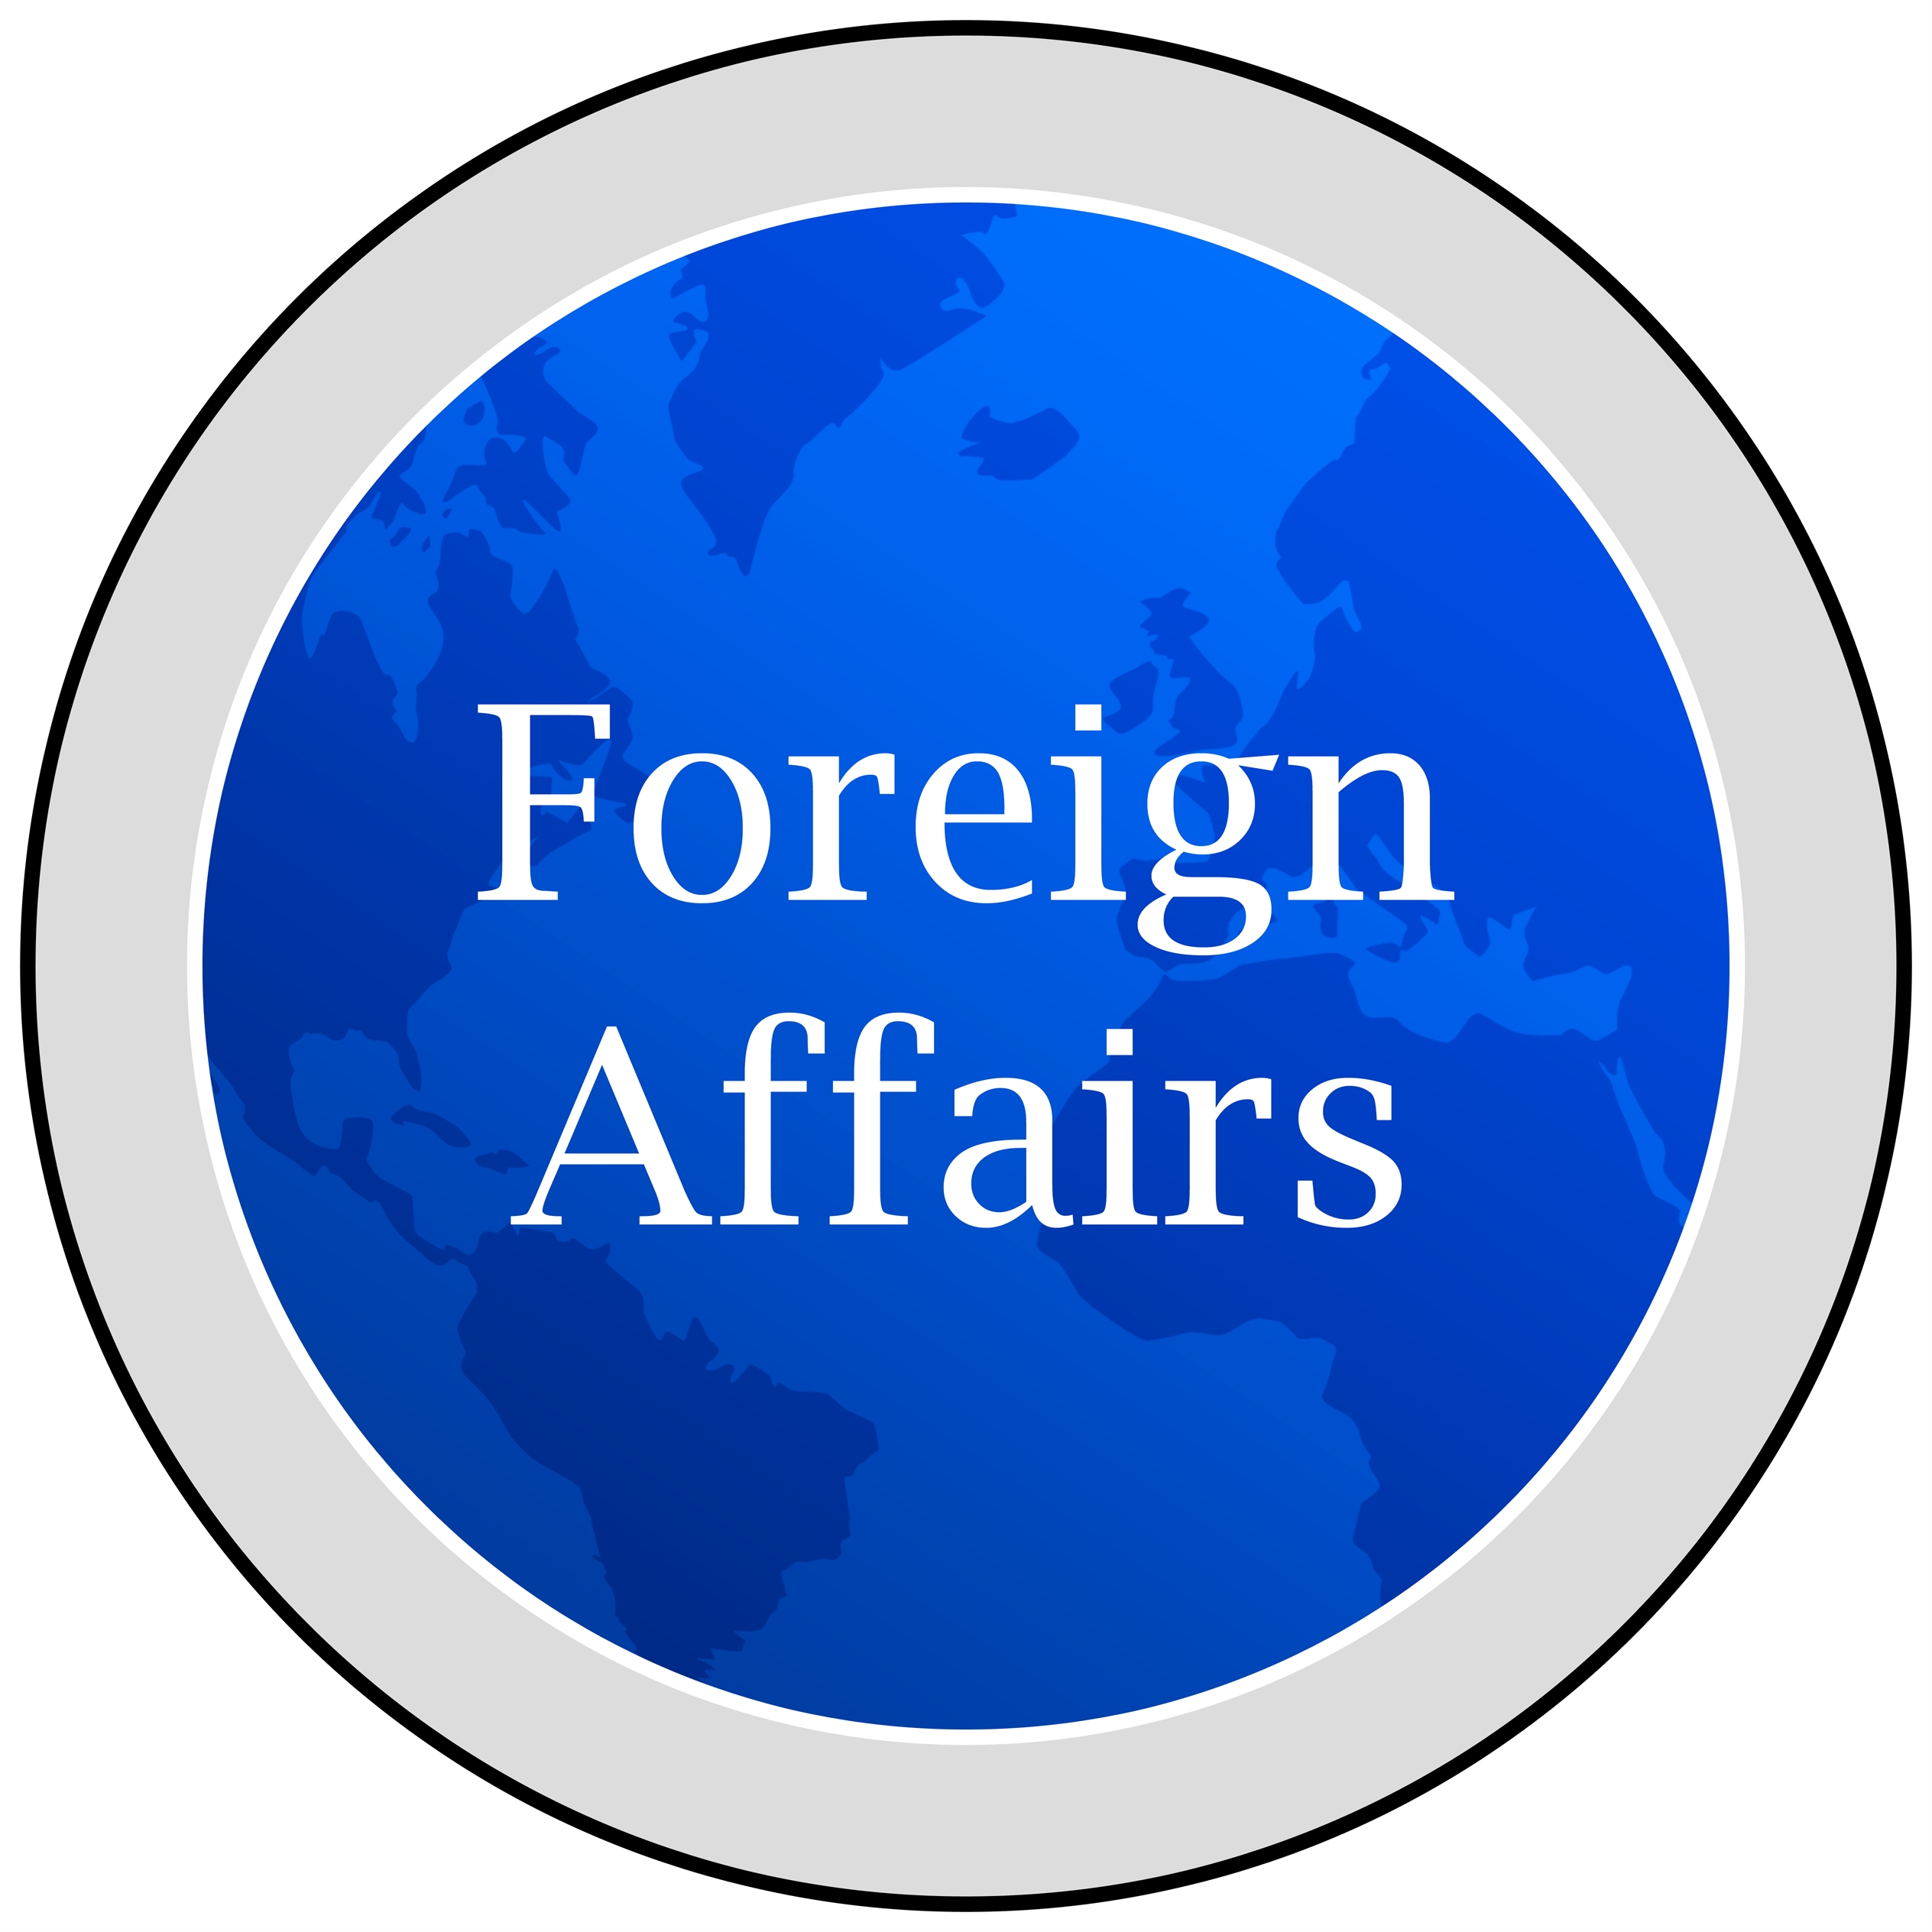 Foreign Affairs հանդեսը համար է նվիրել Հայաստանի տնտեսական 
քաղաքականությանը